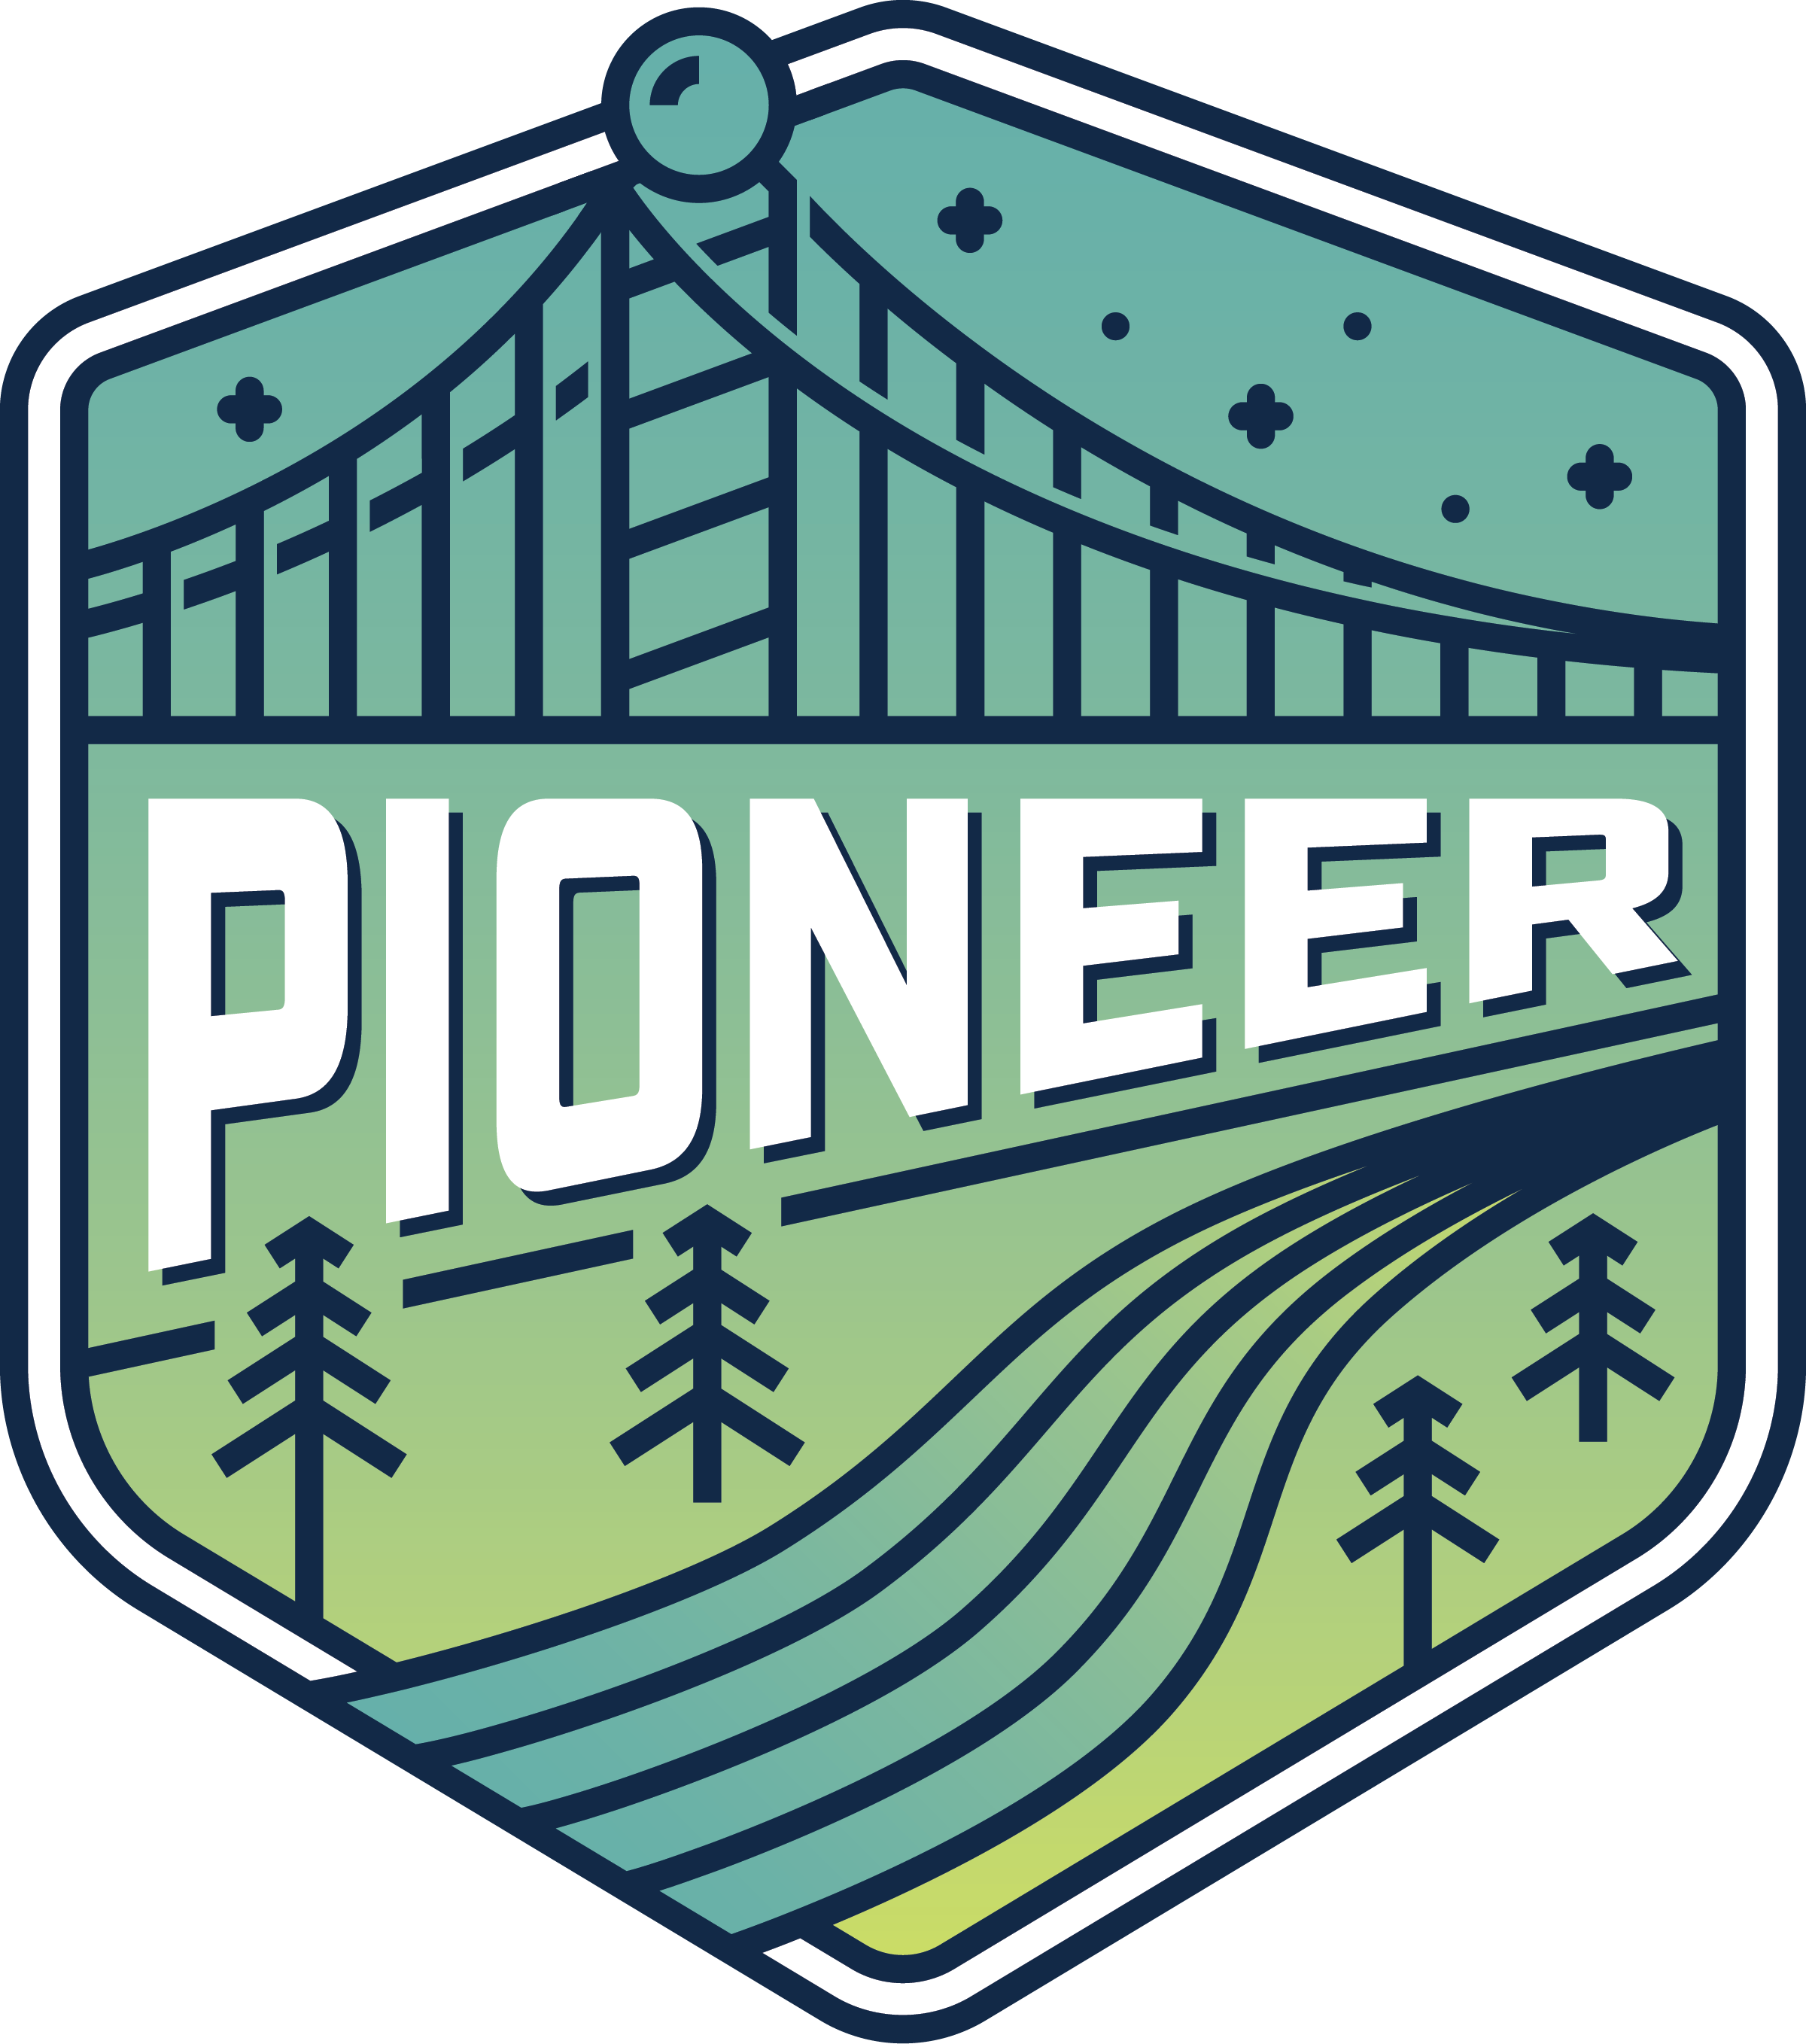 pioneer logo